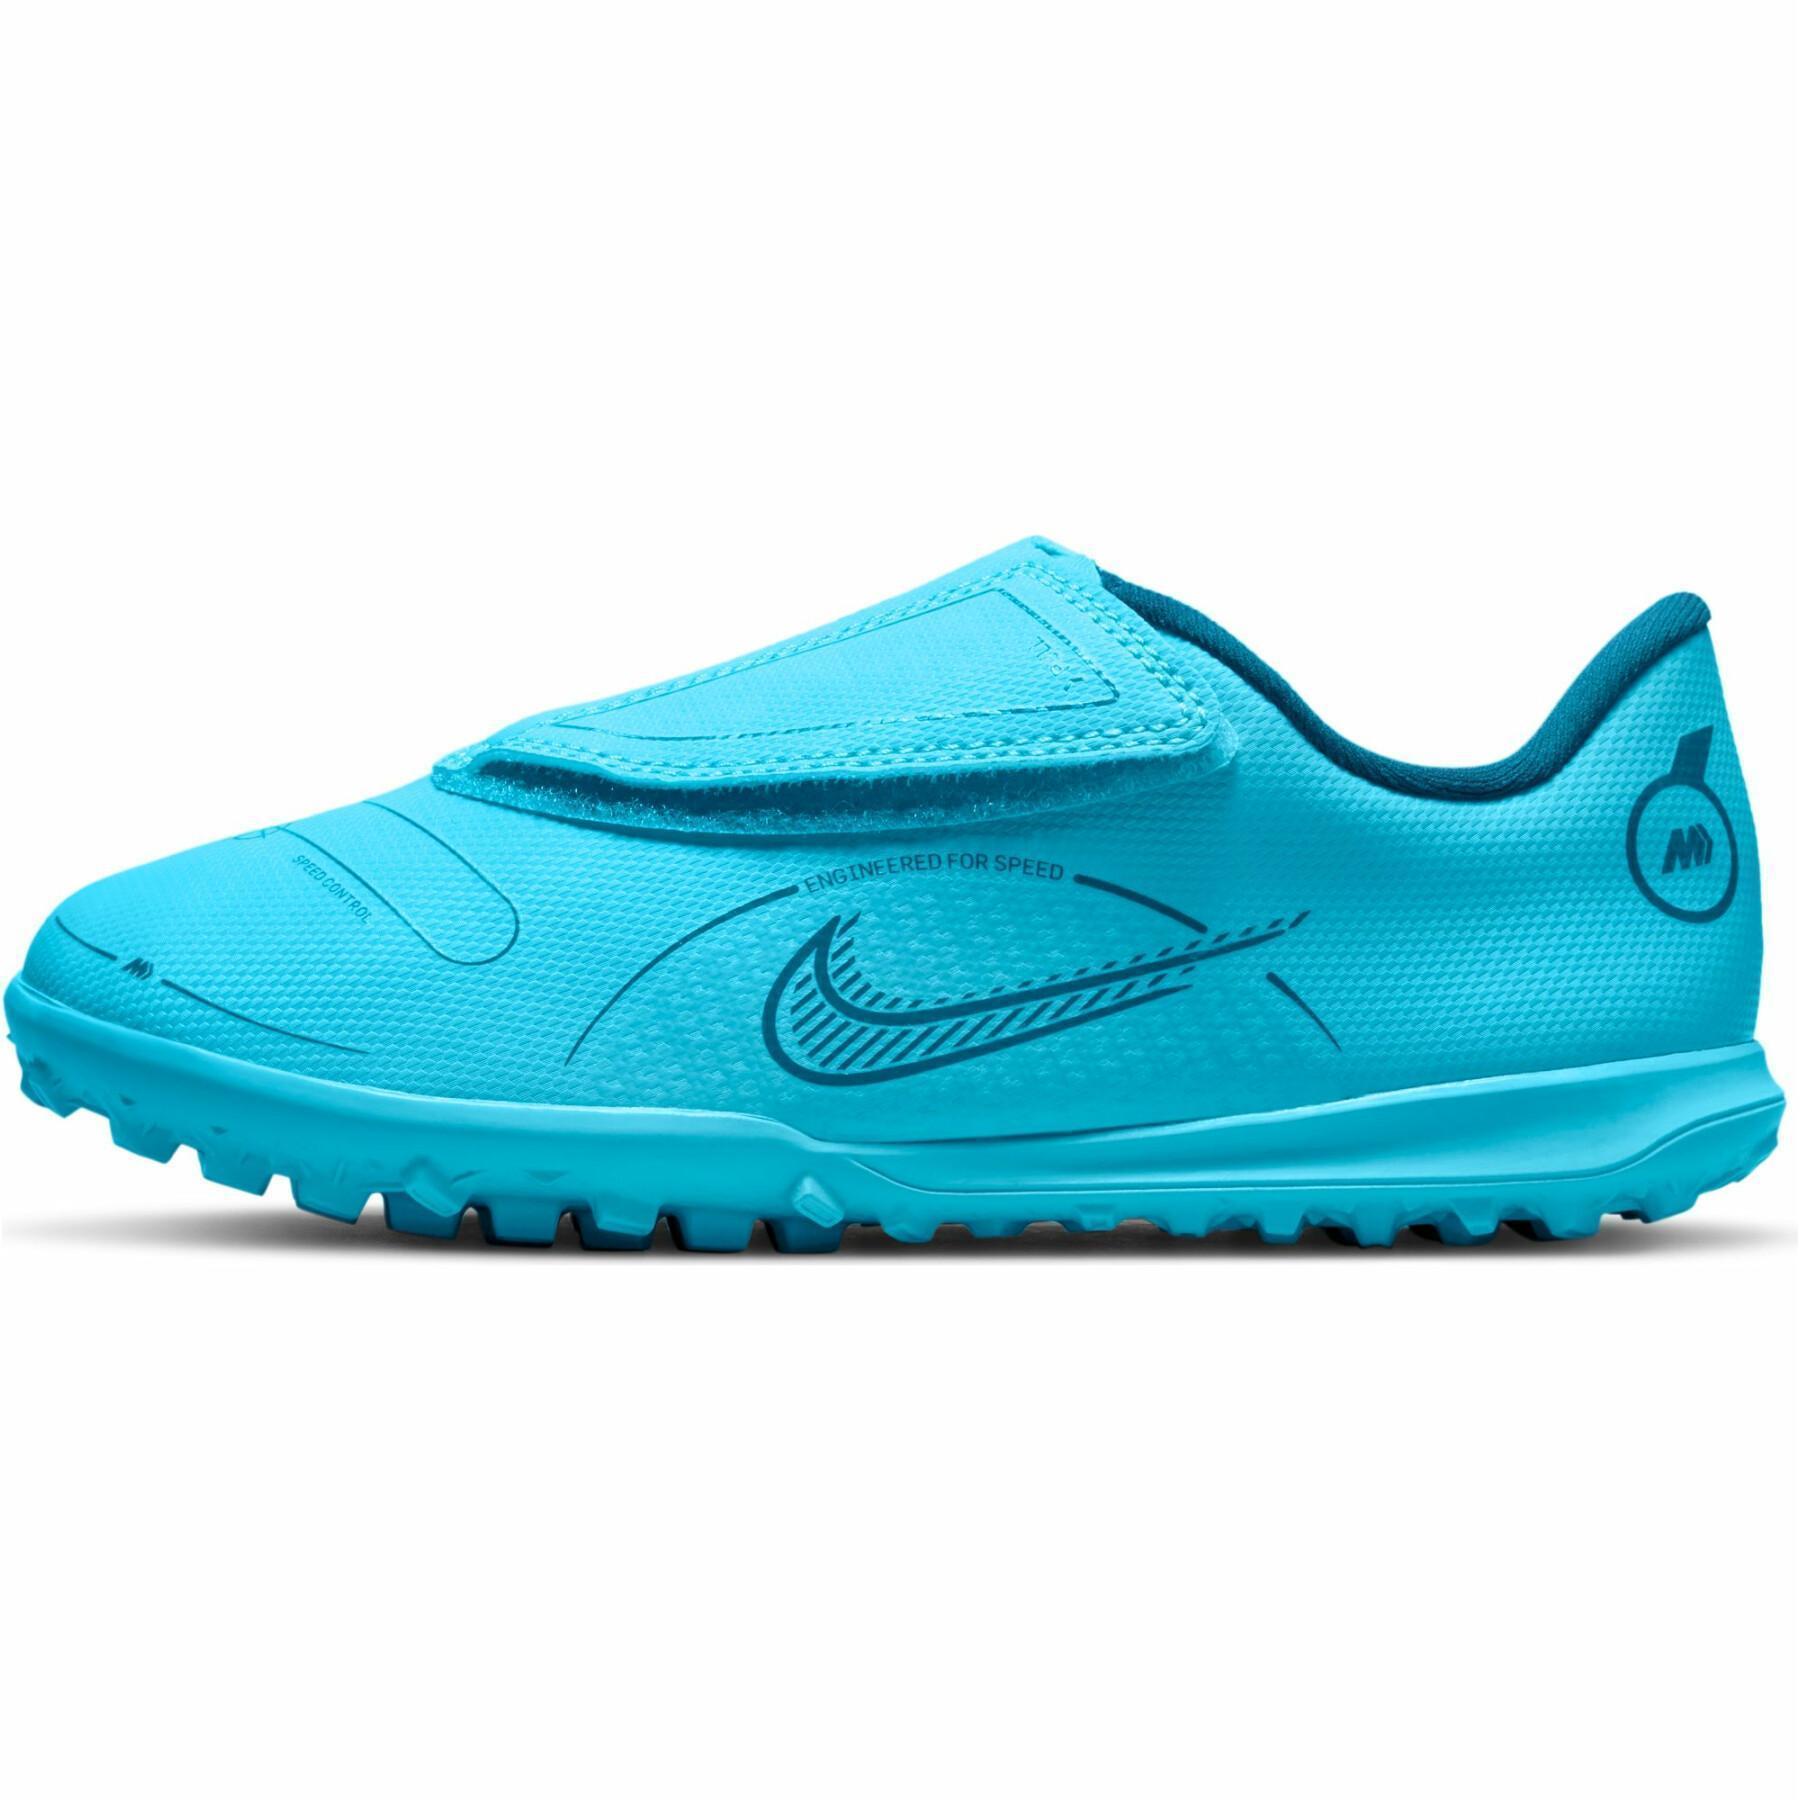 Sapatos de futebol para crianças Nike Jr. Mercurial Vapor 14 Club TF -Blueprint Pack